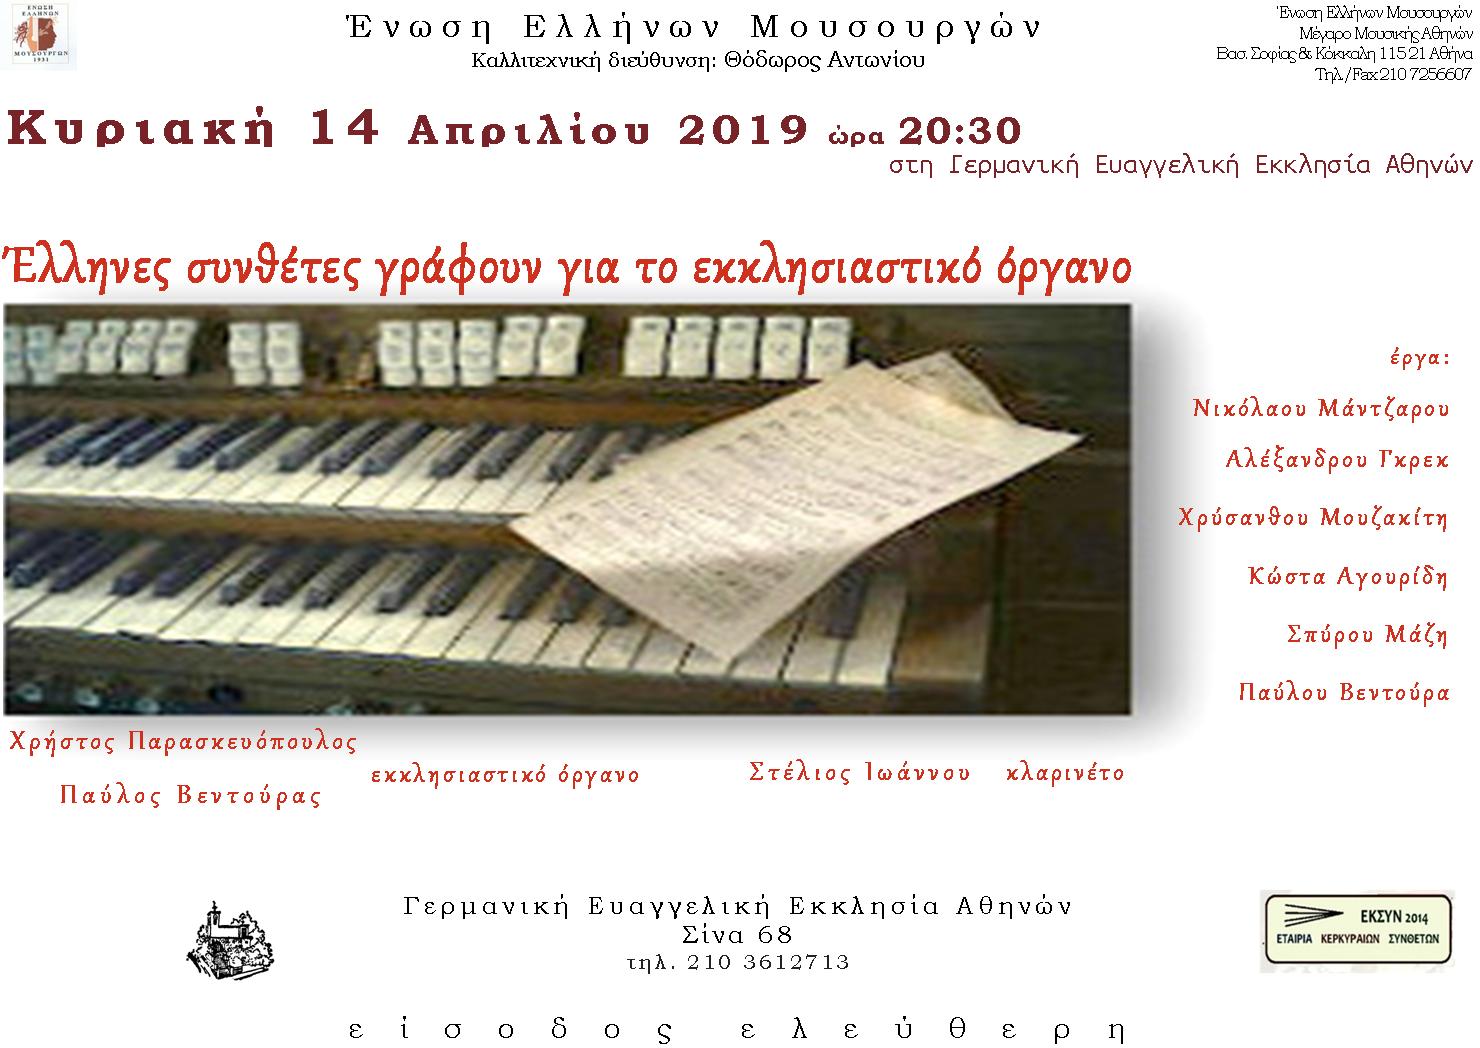 Οι Έλληνες συνθέτες γράφουν για το Εκκλησιαστικό Όργανο